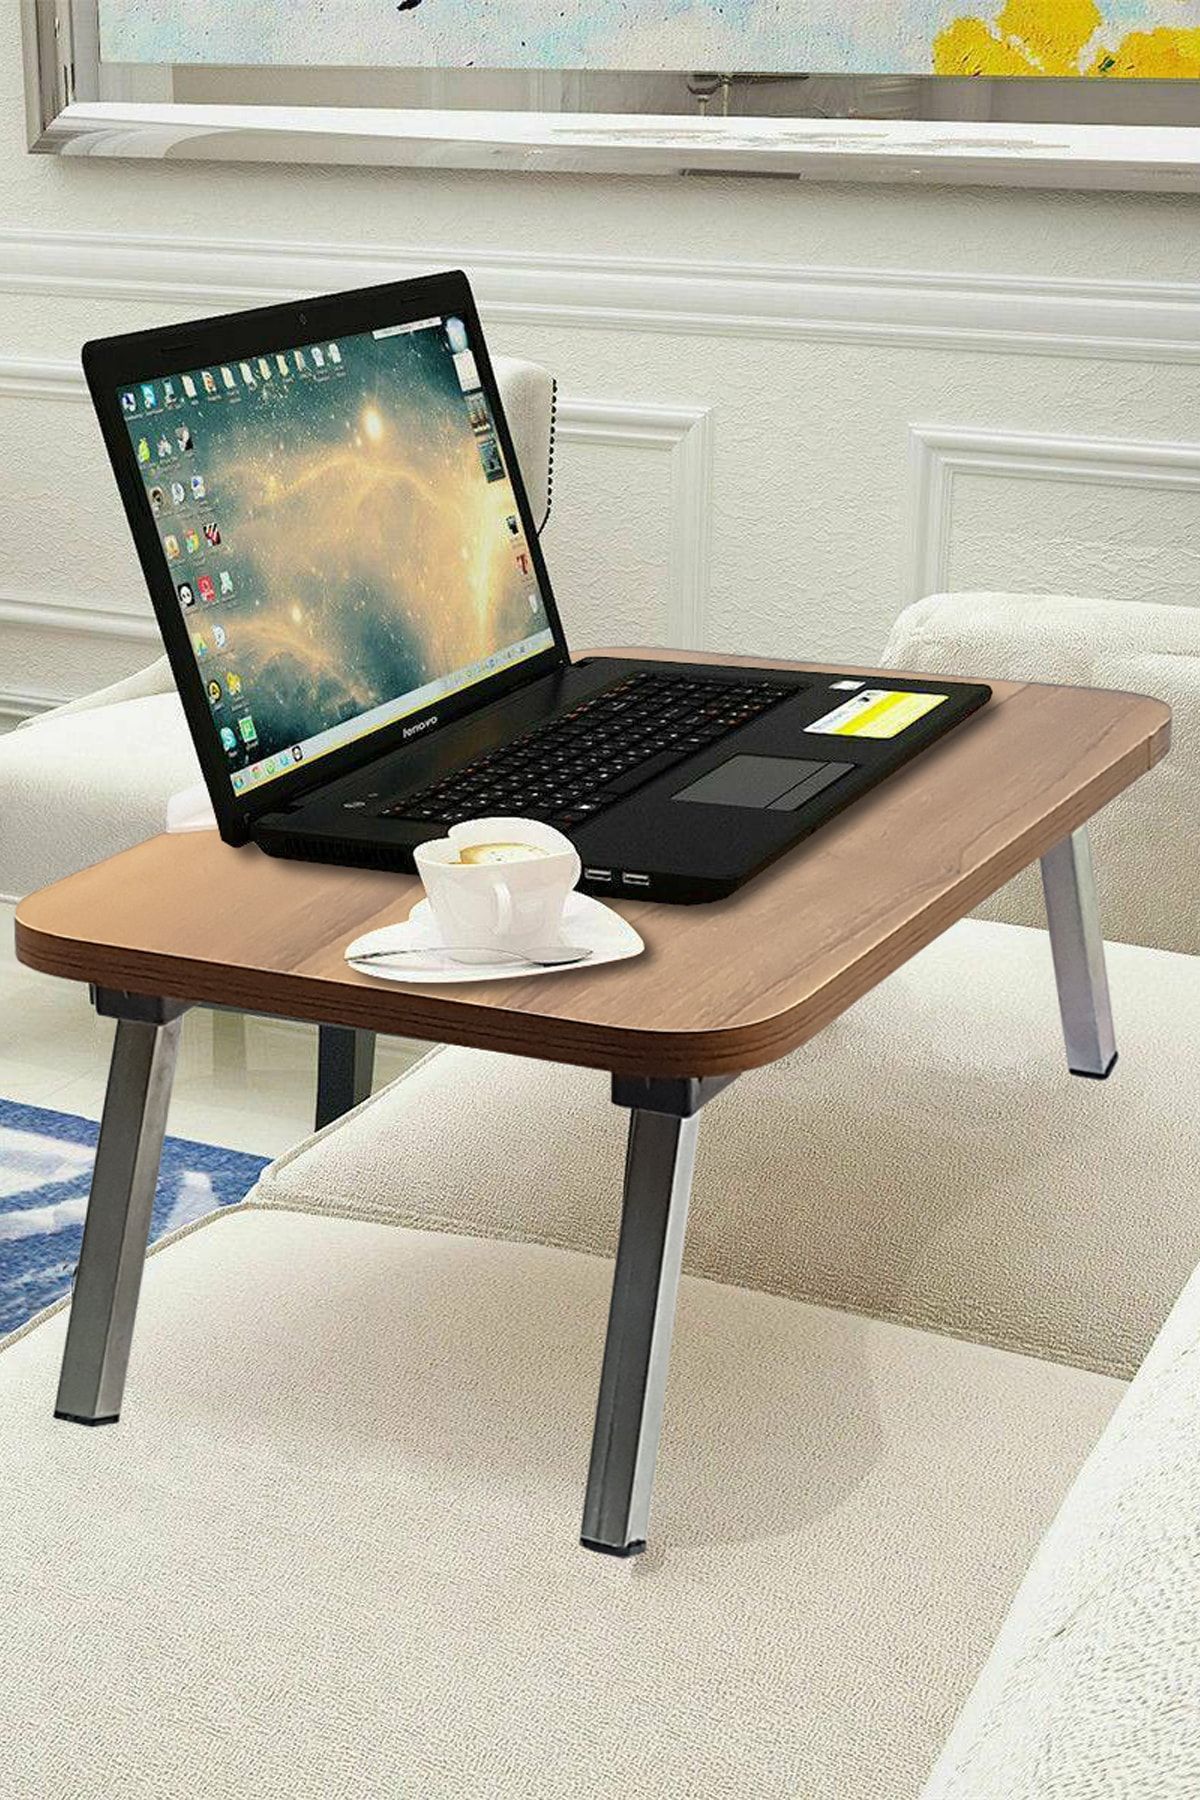 Binbirreyon Katlanır Laptop Masası Çalışma Masası Tablet Standlı Yatak Sehpası Ceviz 35x56cm Bb031